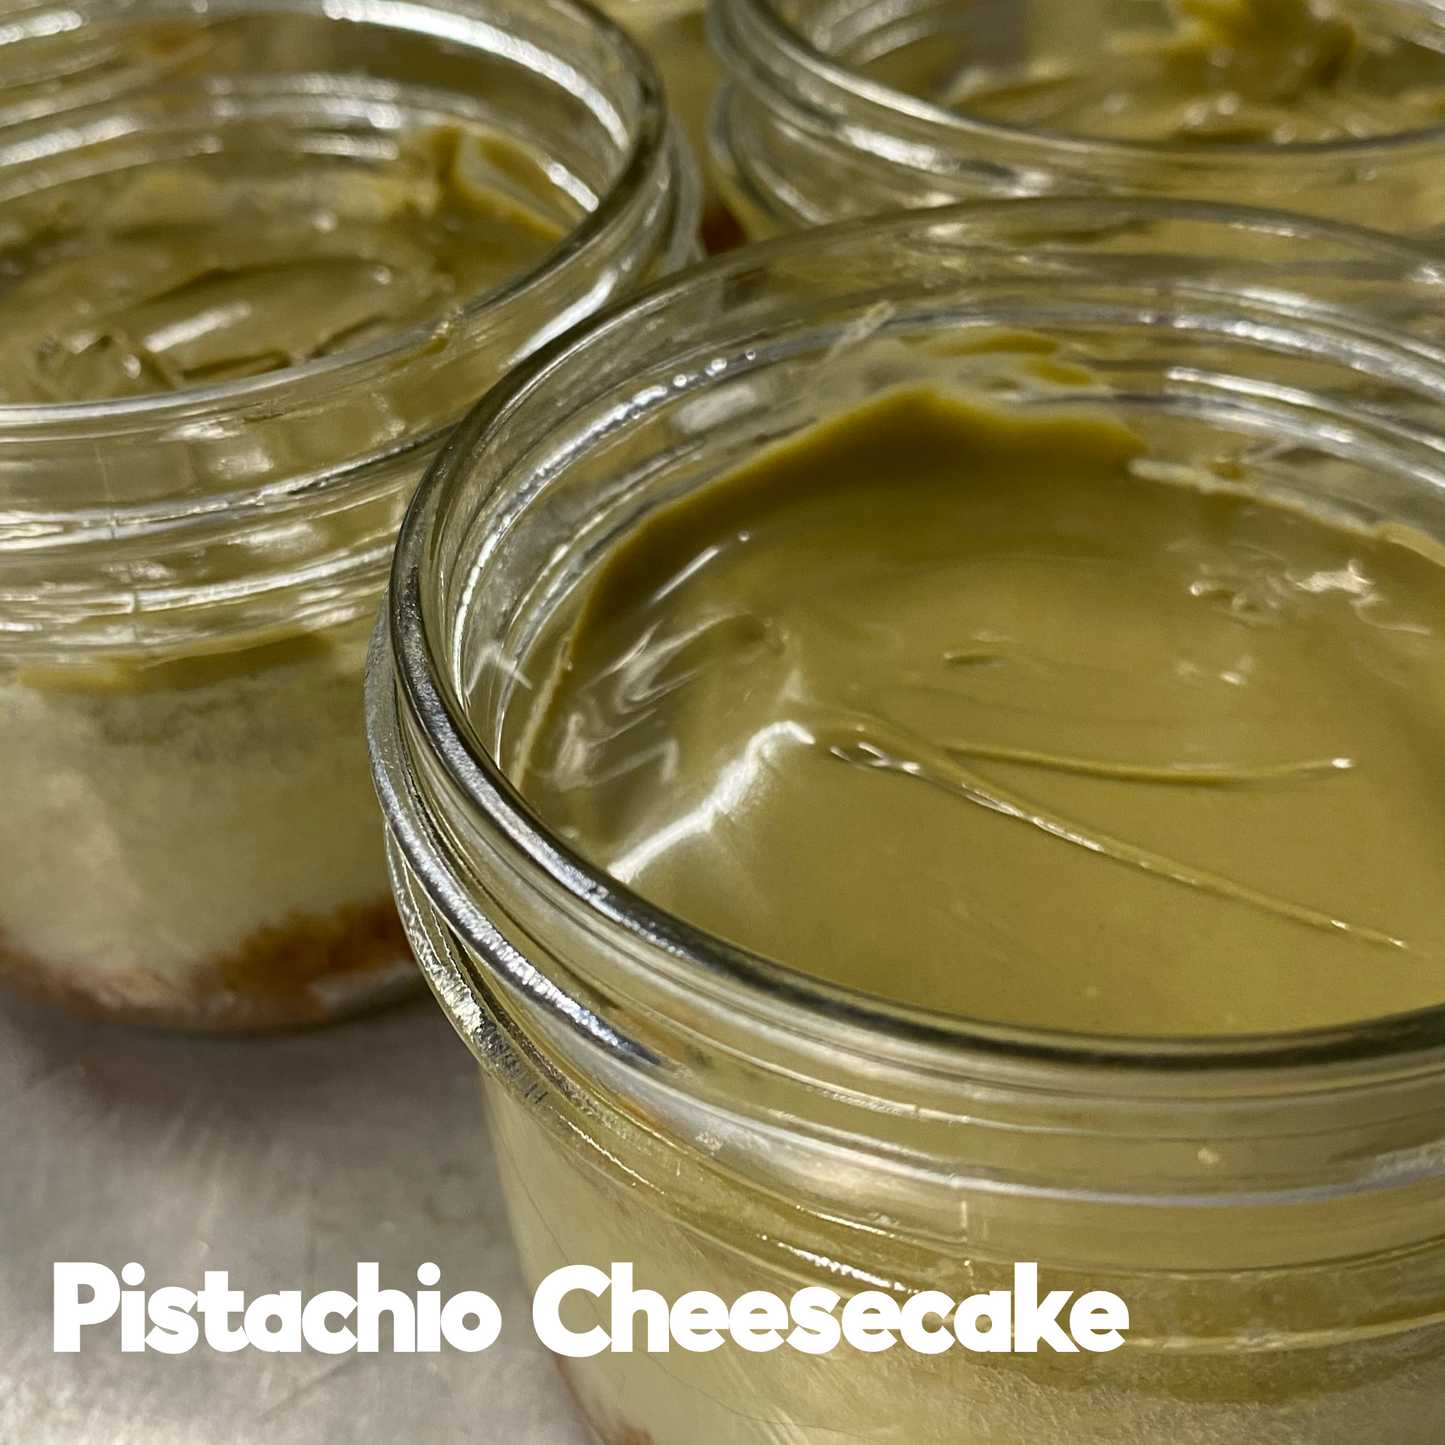 Cheesecake Jars